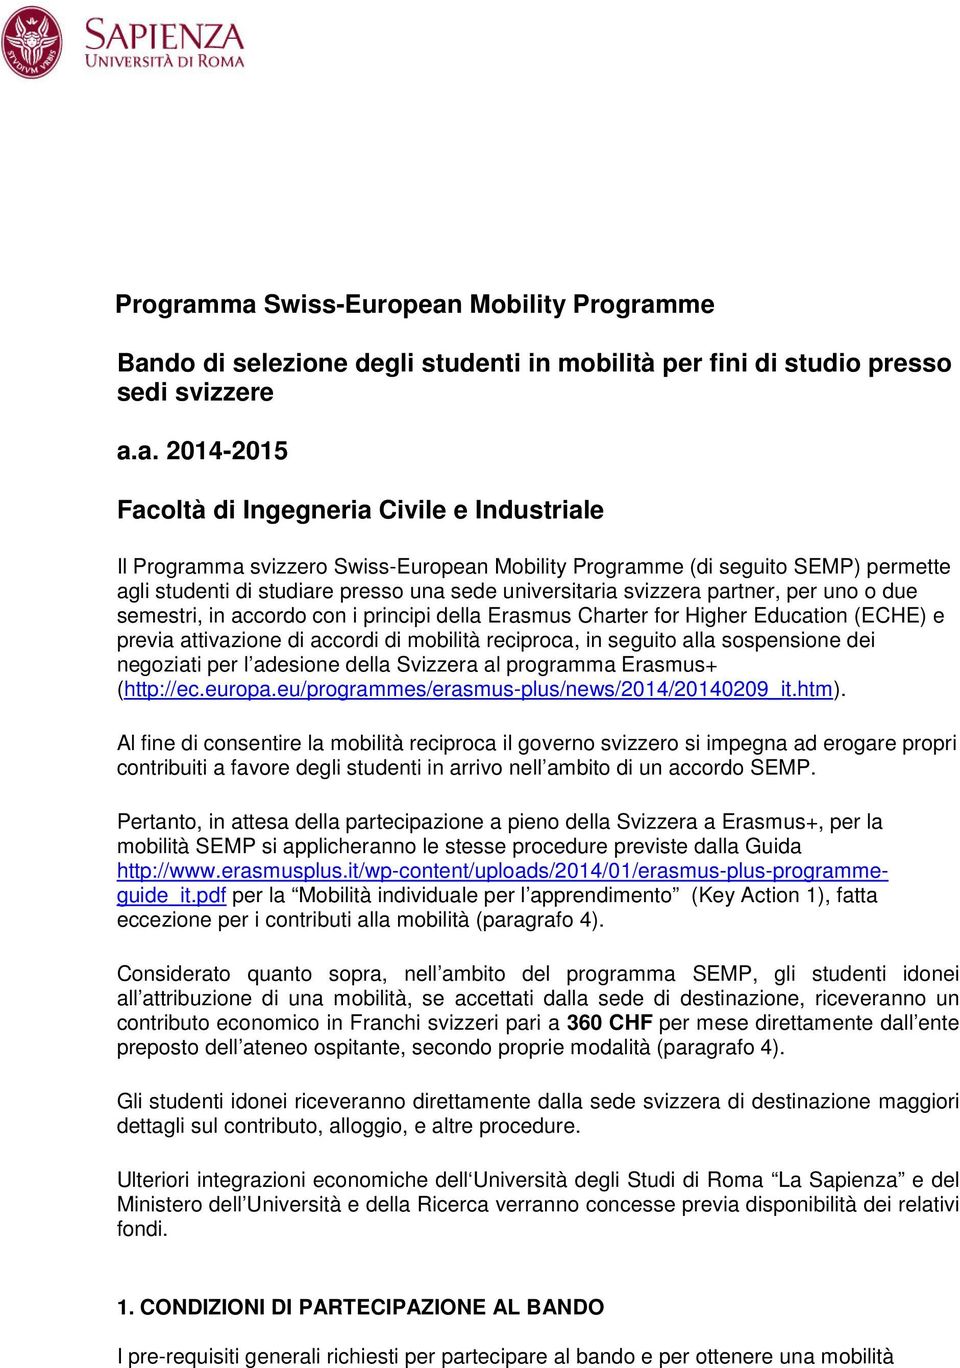 Swiss-European Mobility me (di seguito SEMP) permette agli studenti di studiare presso una sede universitaria svizzera partner, per uno o due semestri, in accordo con i principi della Erasmus Charter